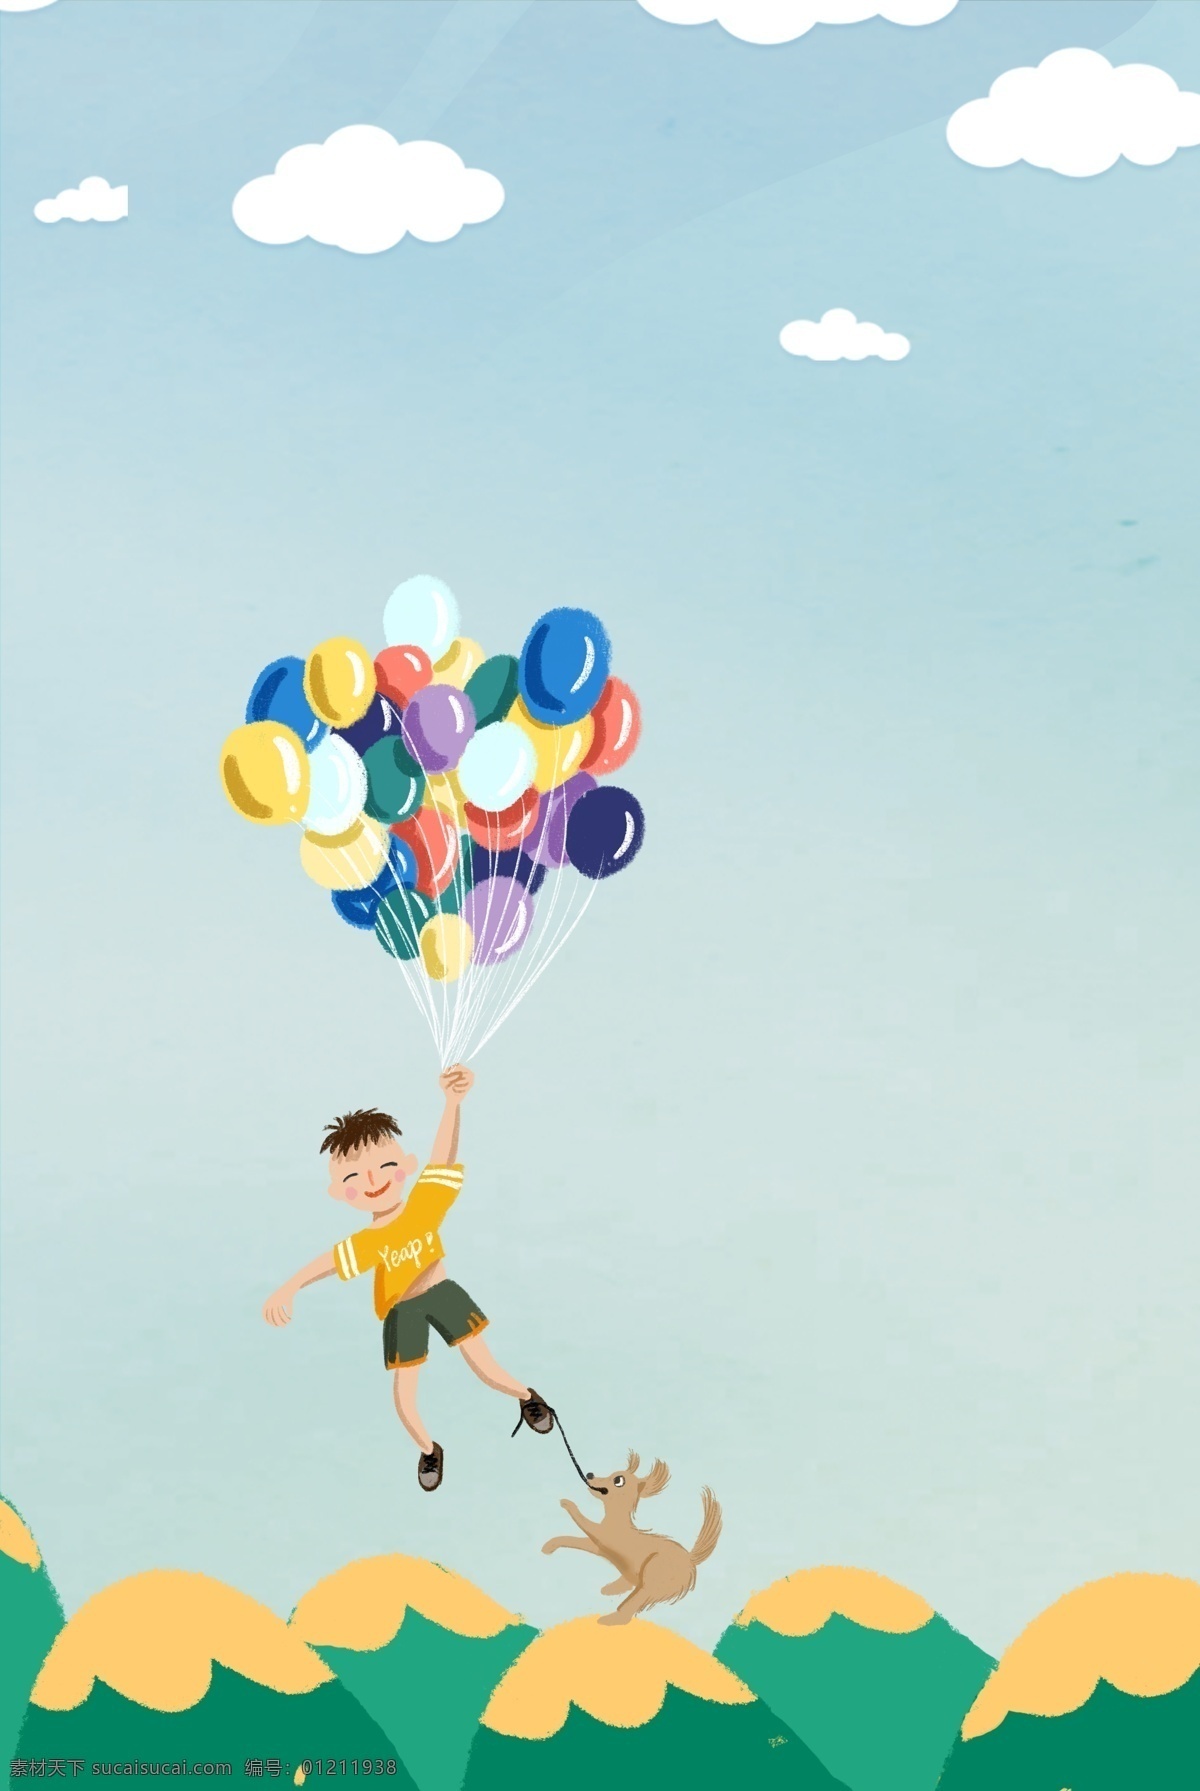 六一儿童节 蓝色天空 背景 儿童节 天空 云朵 气球 小朋友 清新 手绘 卡通